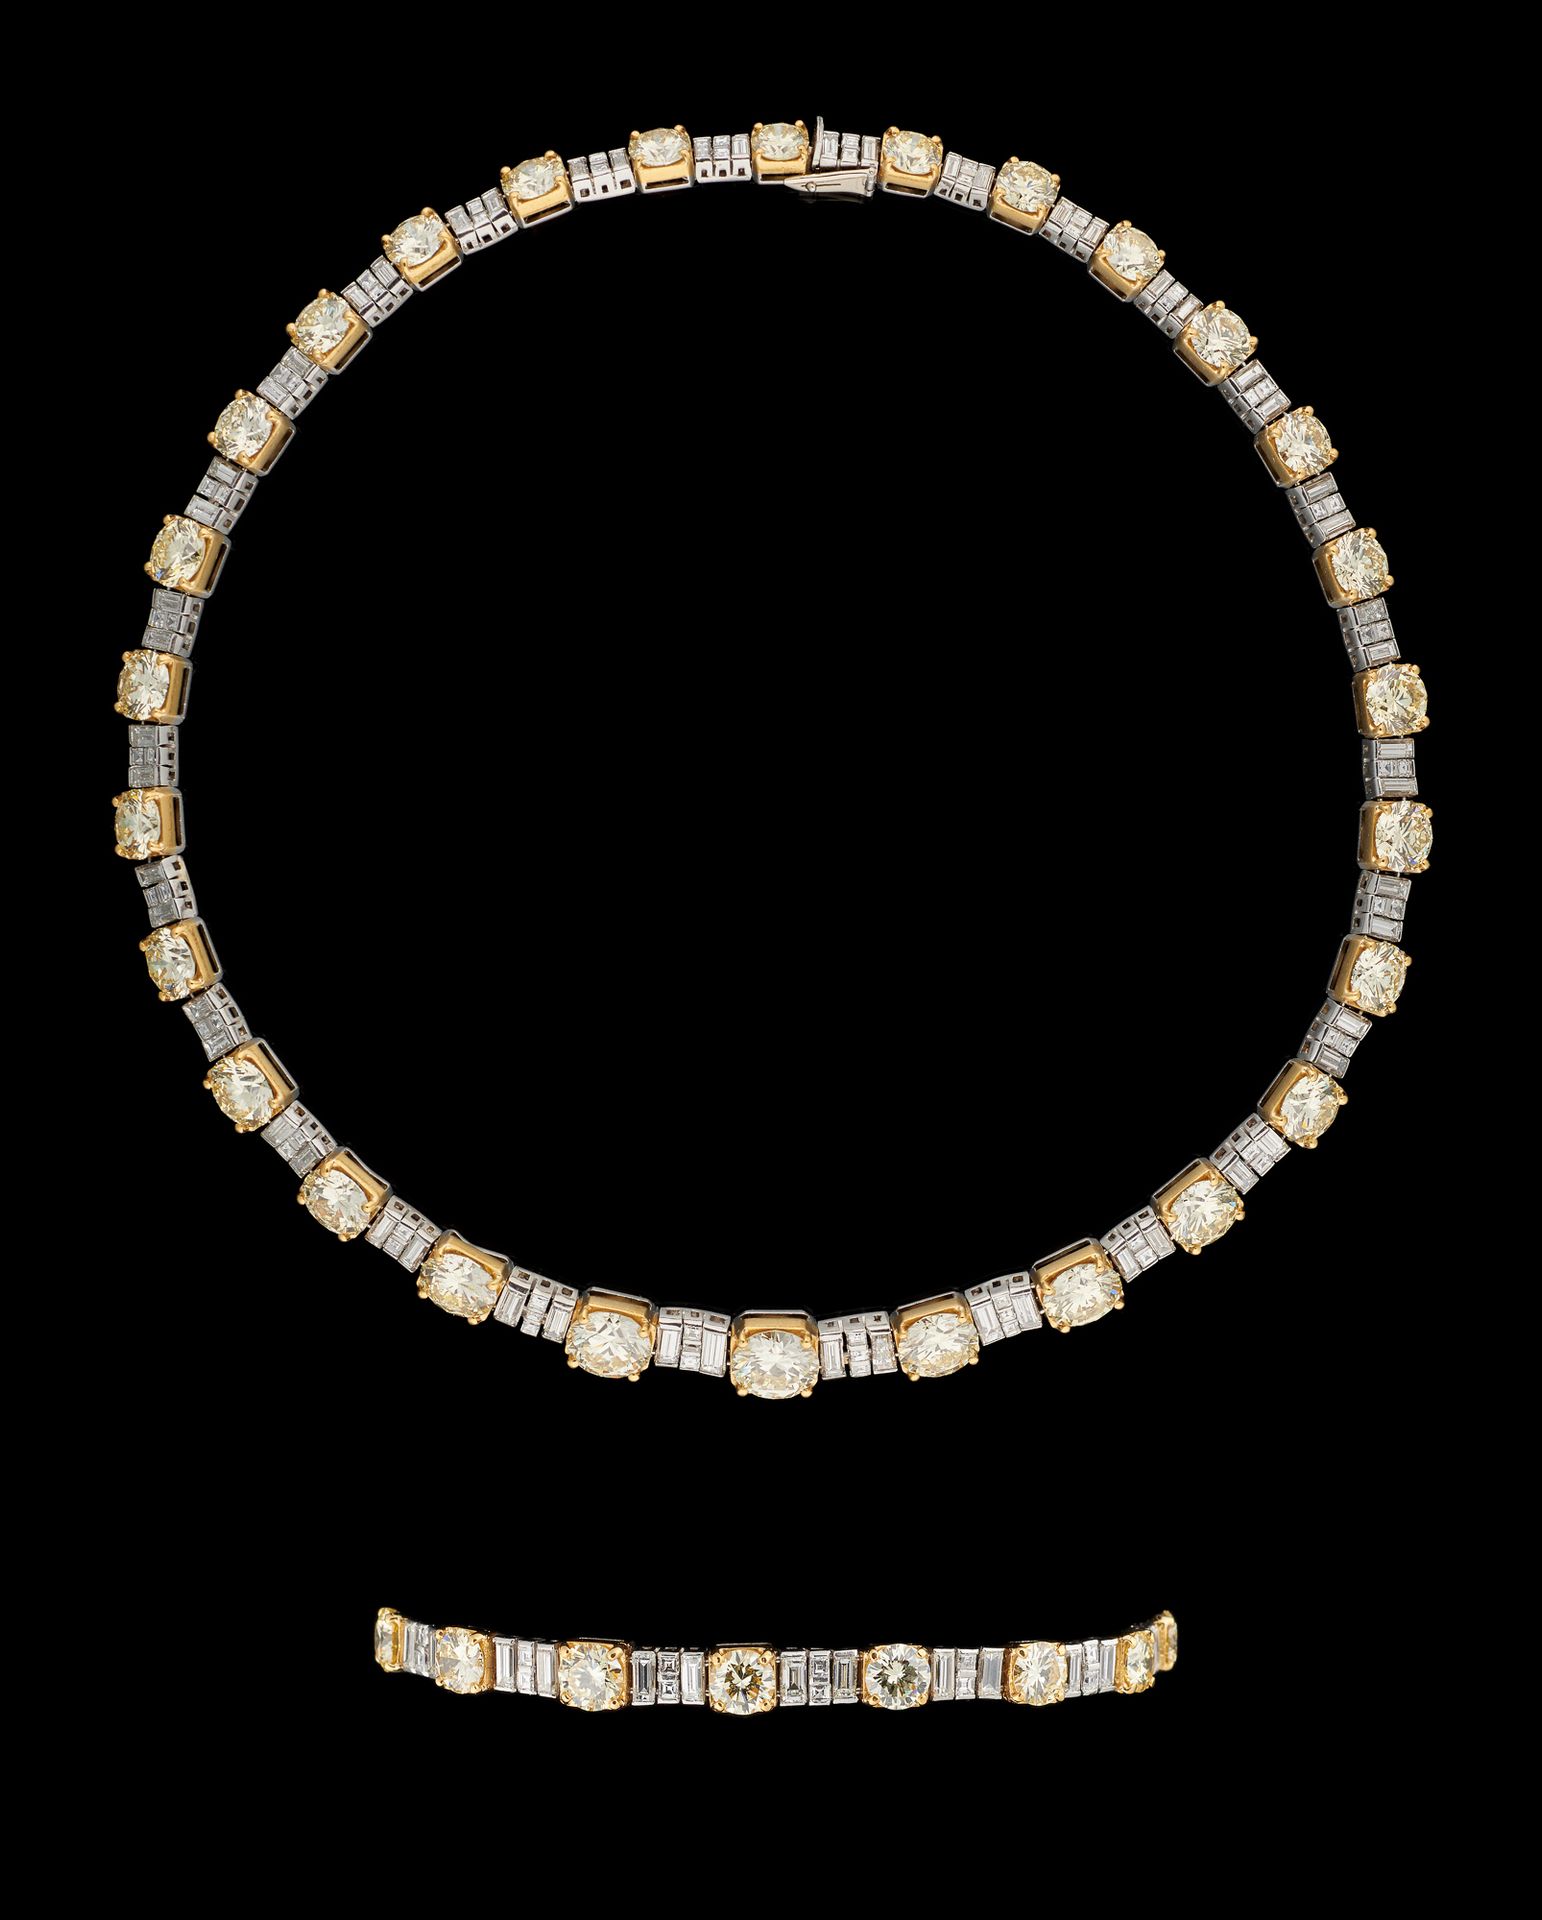 Wolfers joailliers. 珠宝：重要的铂金和黄金套装，包括一条项链和一个配套的手镯（手镯也可以用来延长项链），包括项链上的28颗天然浅黄色明亮型切&hellip;